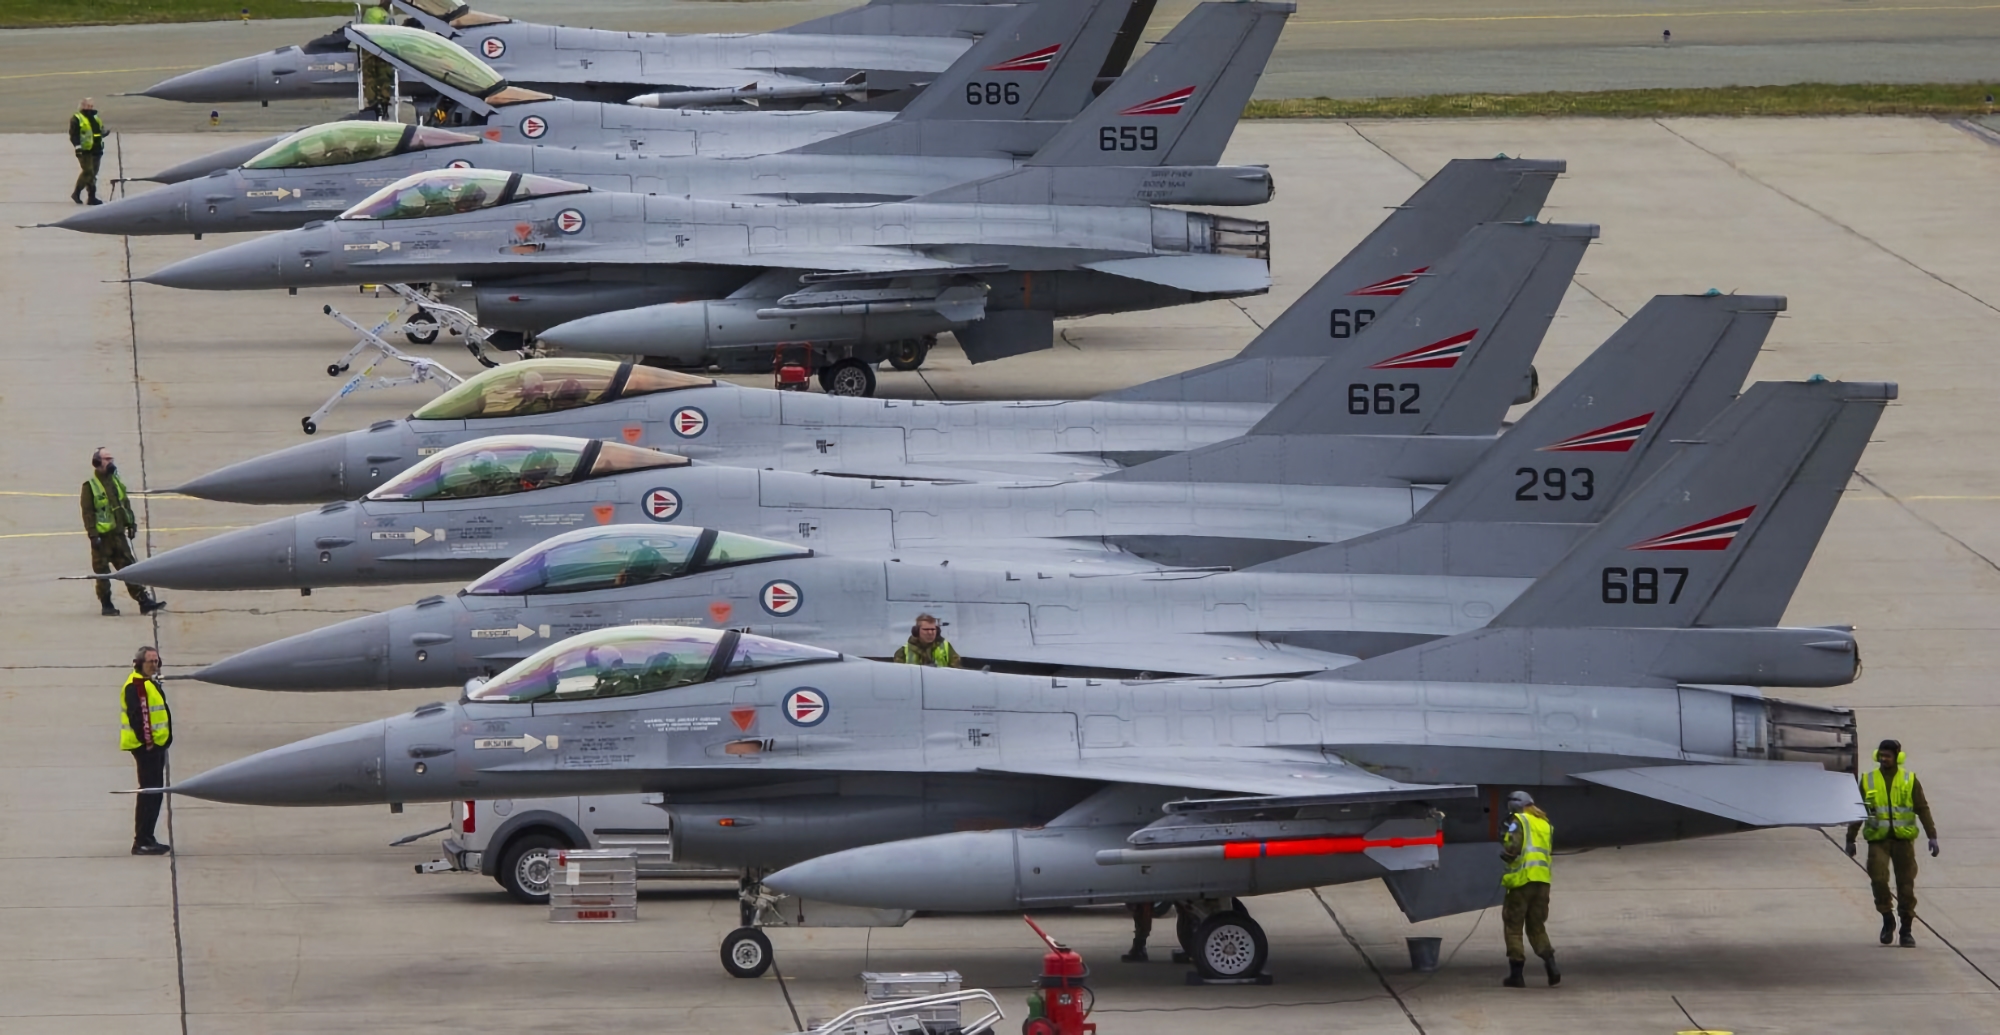 Ukraina może otrzymać holenderskie myśliwce F-16 Fighting Falcon w ciągu sześciu do ośmiu miesięcy